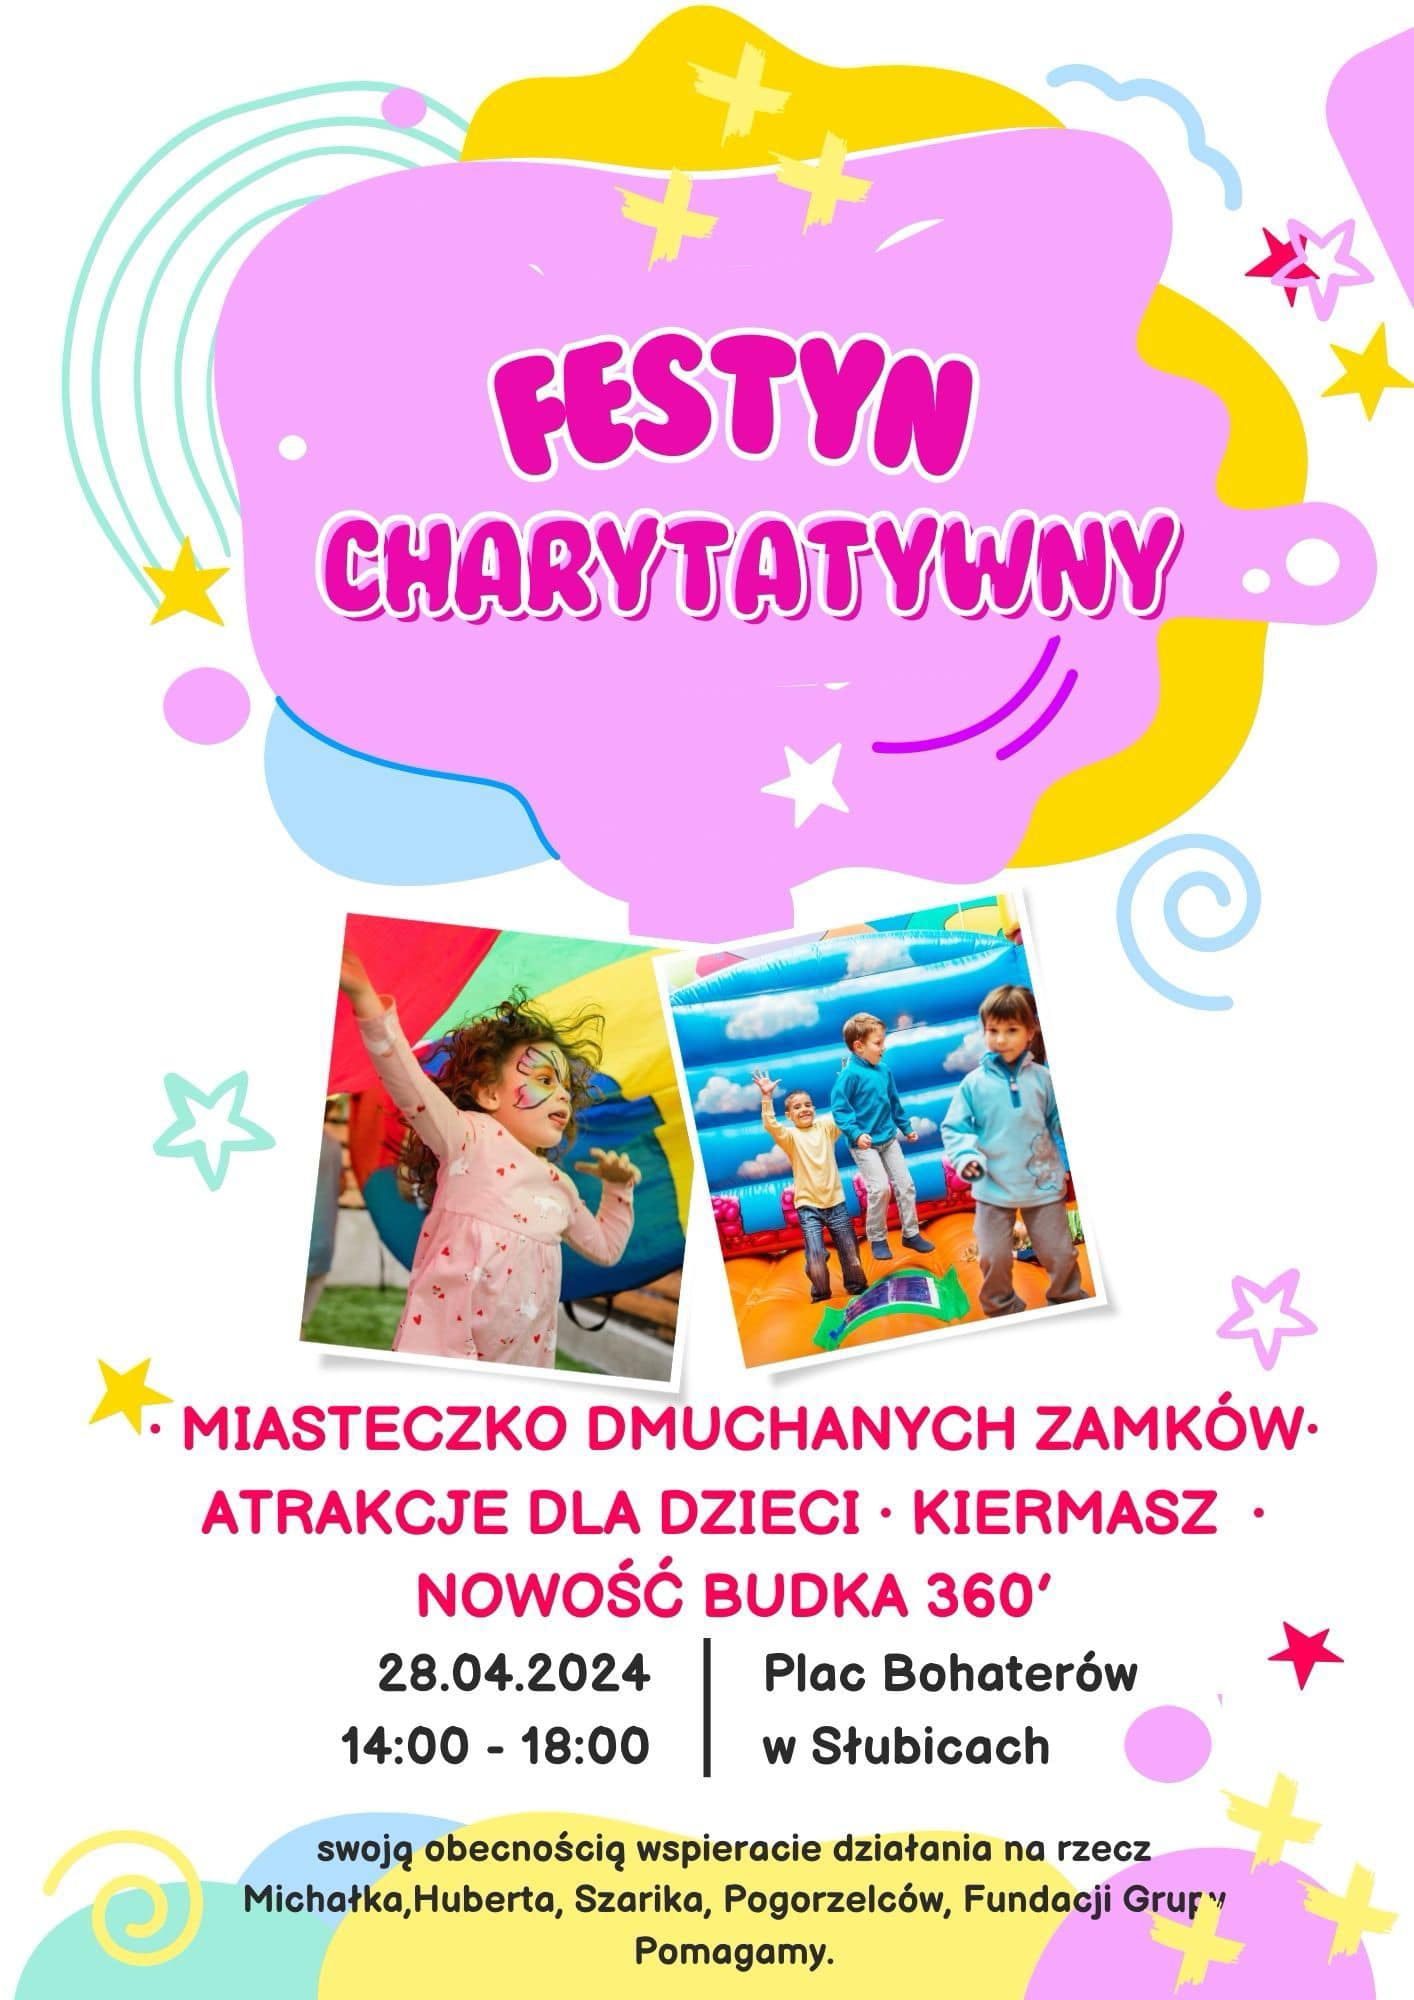 Festyn charytatywny w Słubiach